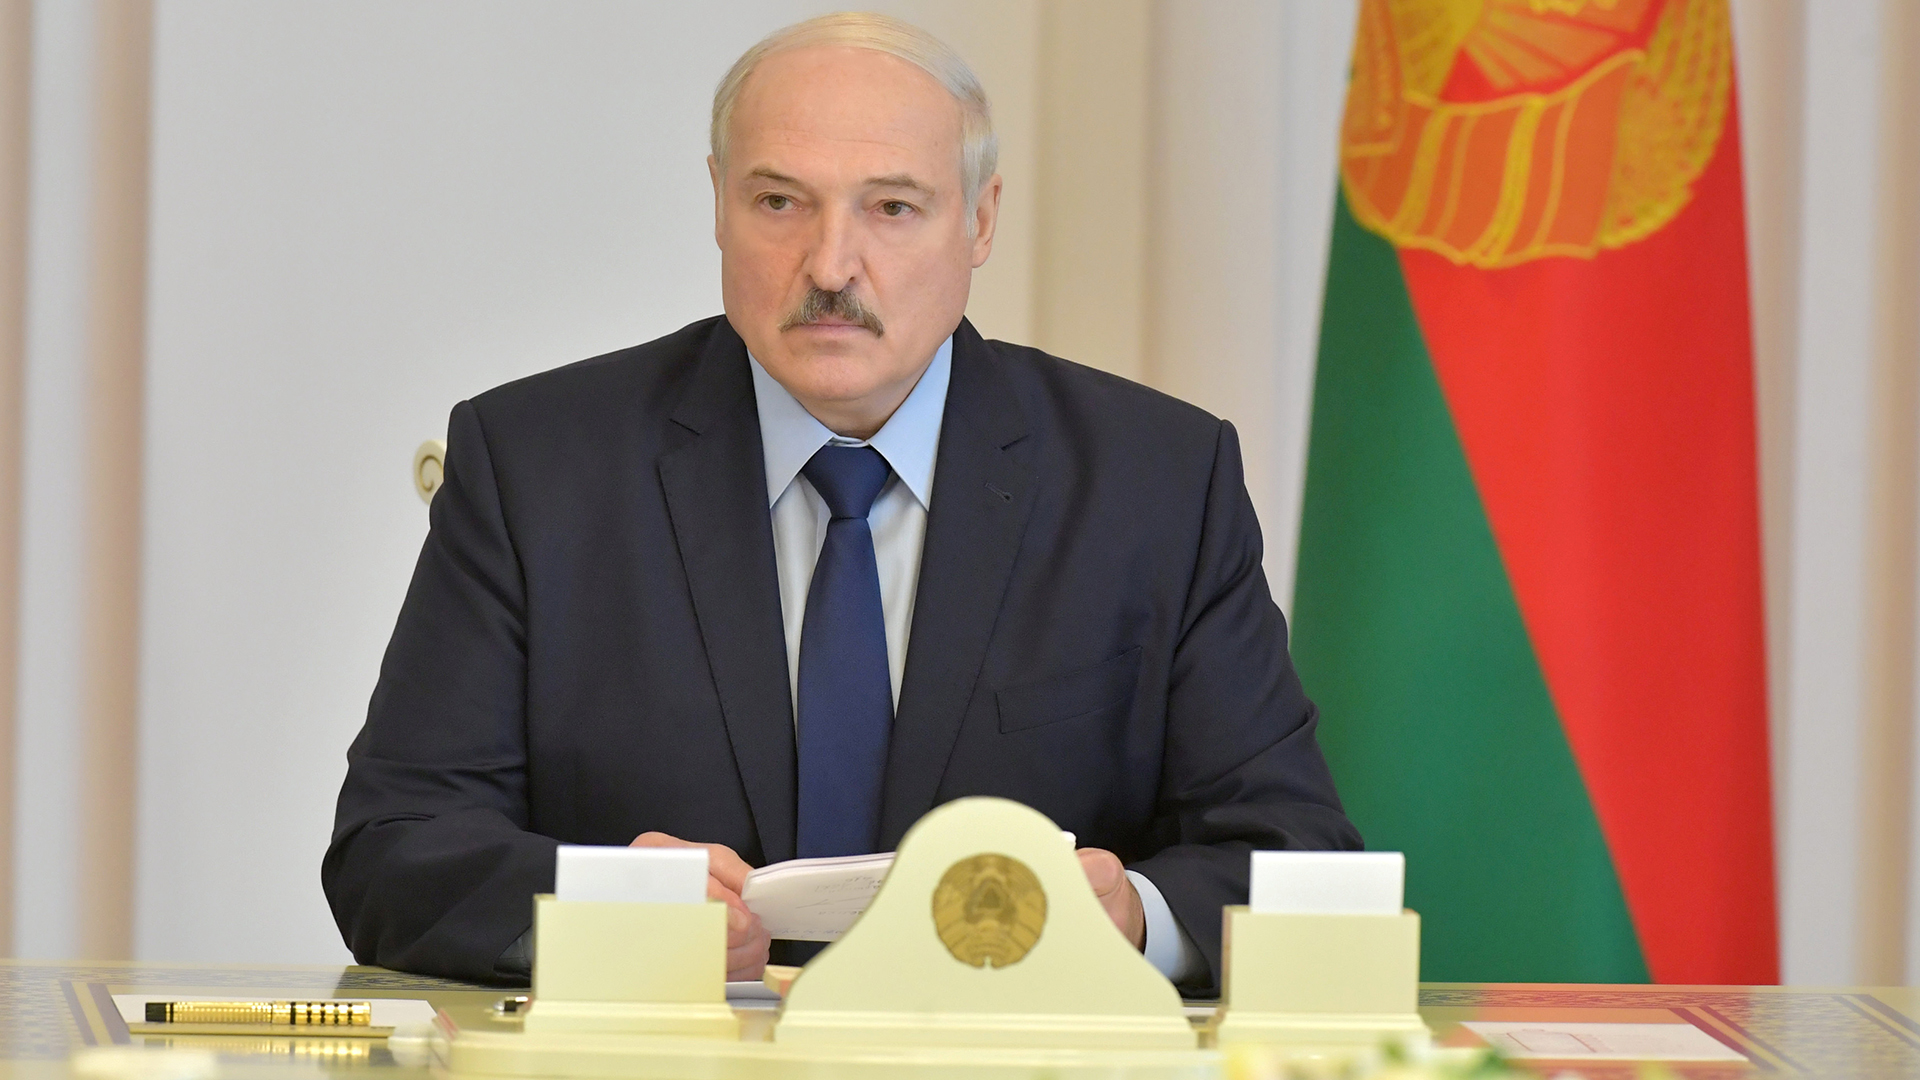 Alexander Lukaschenko | via REUTERS